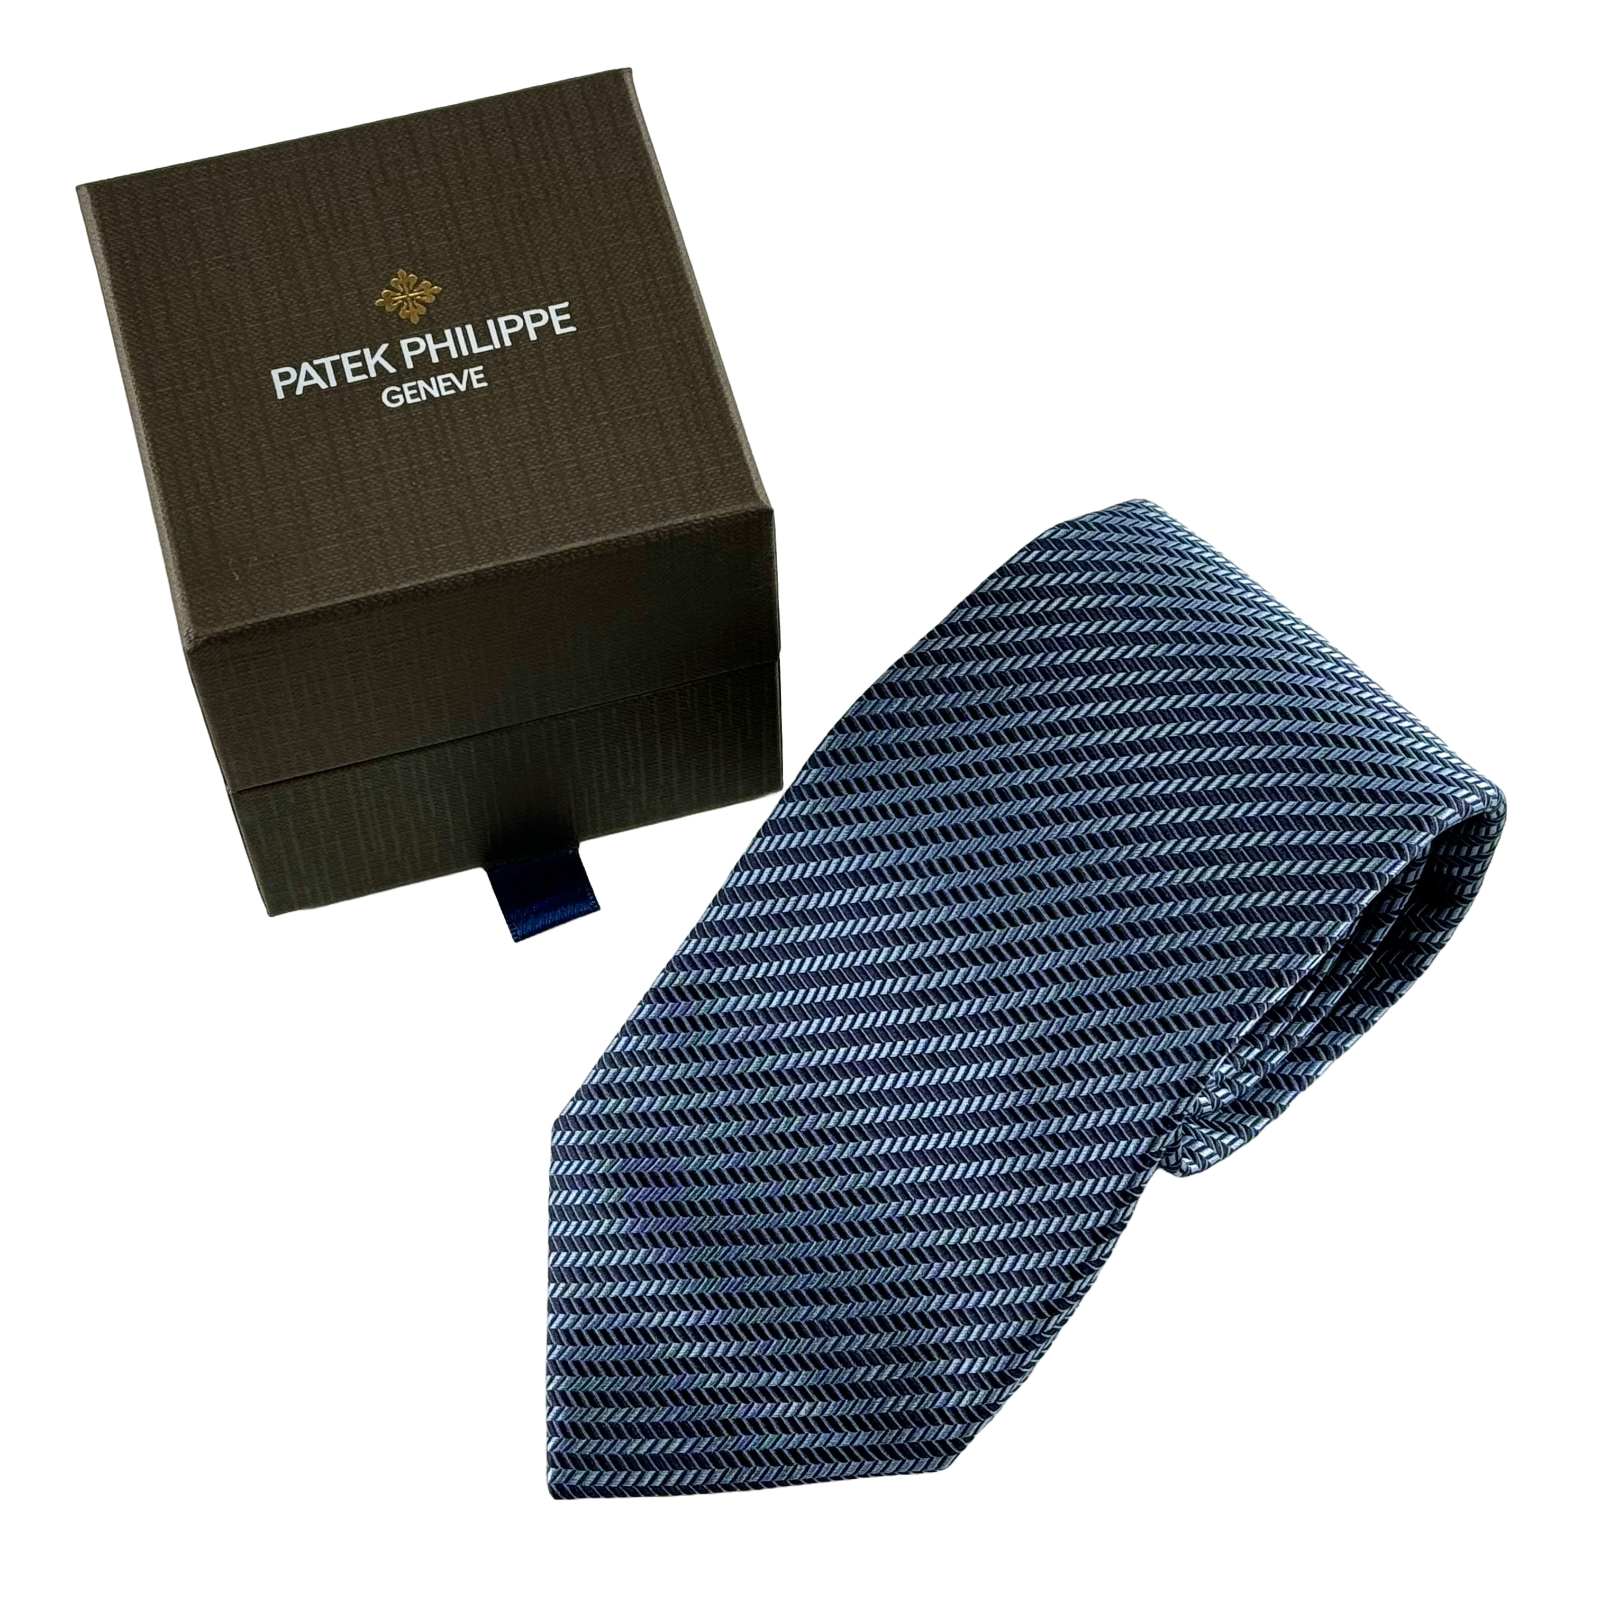  Patek Philippe Krawatte Schleife Necktie Tie 100 % Seide Silk Blau Blue